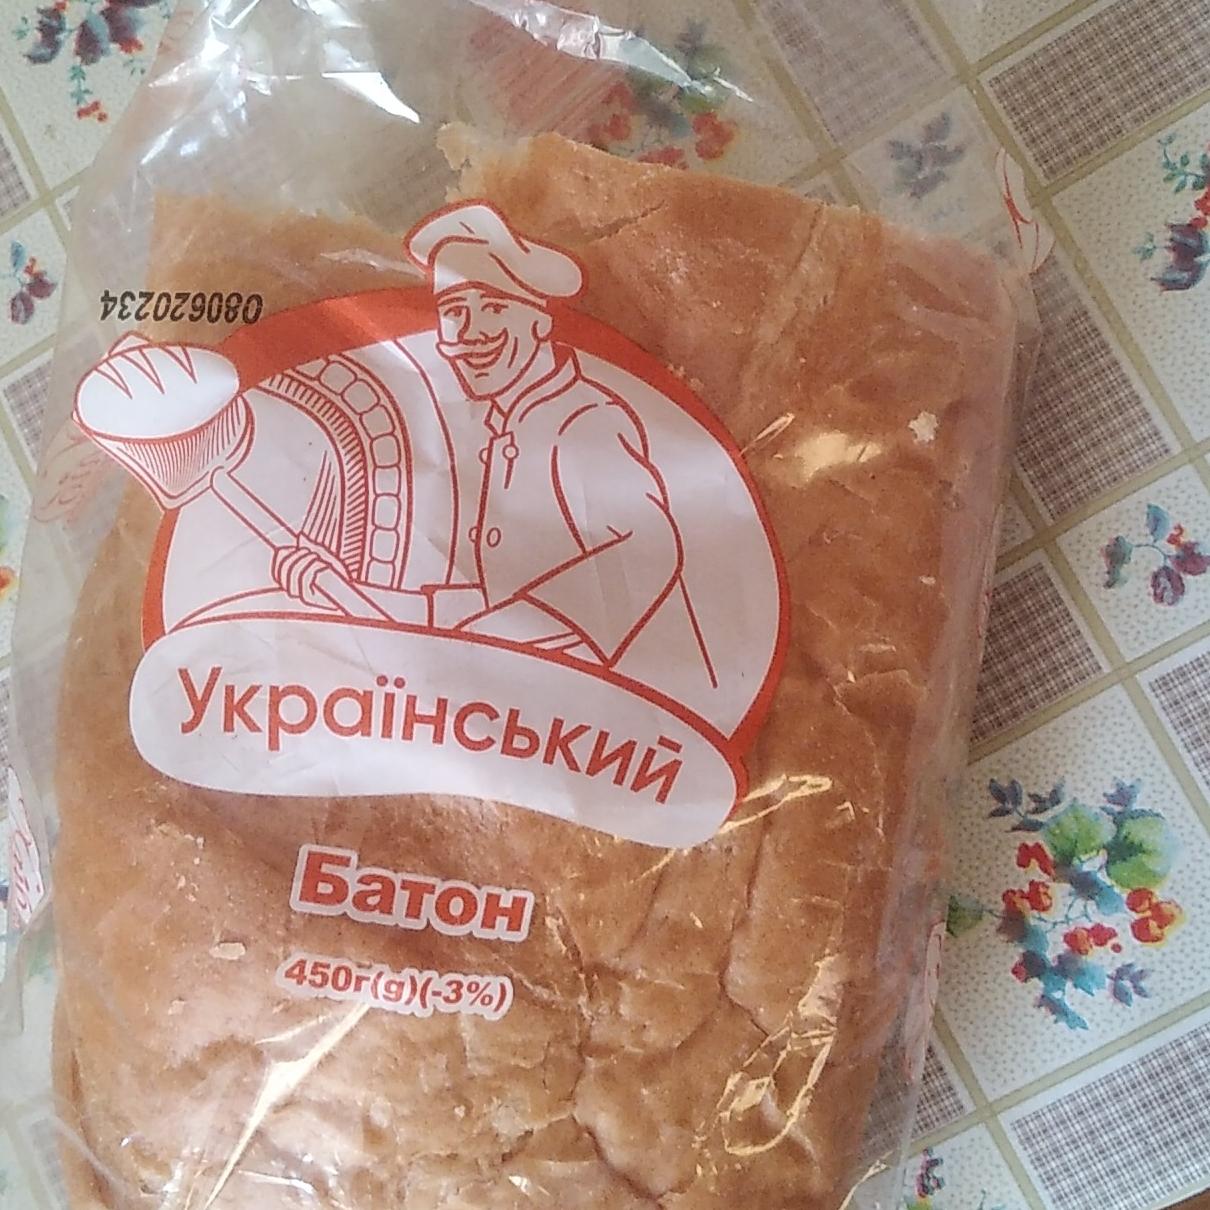 Фото - Батон Український Хліб Житомира